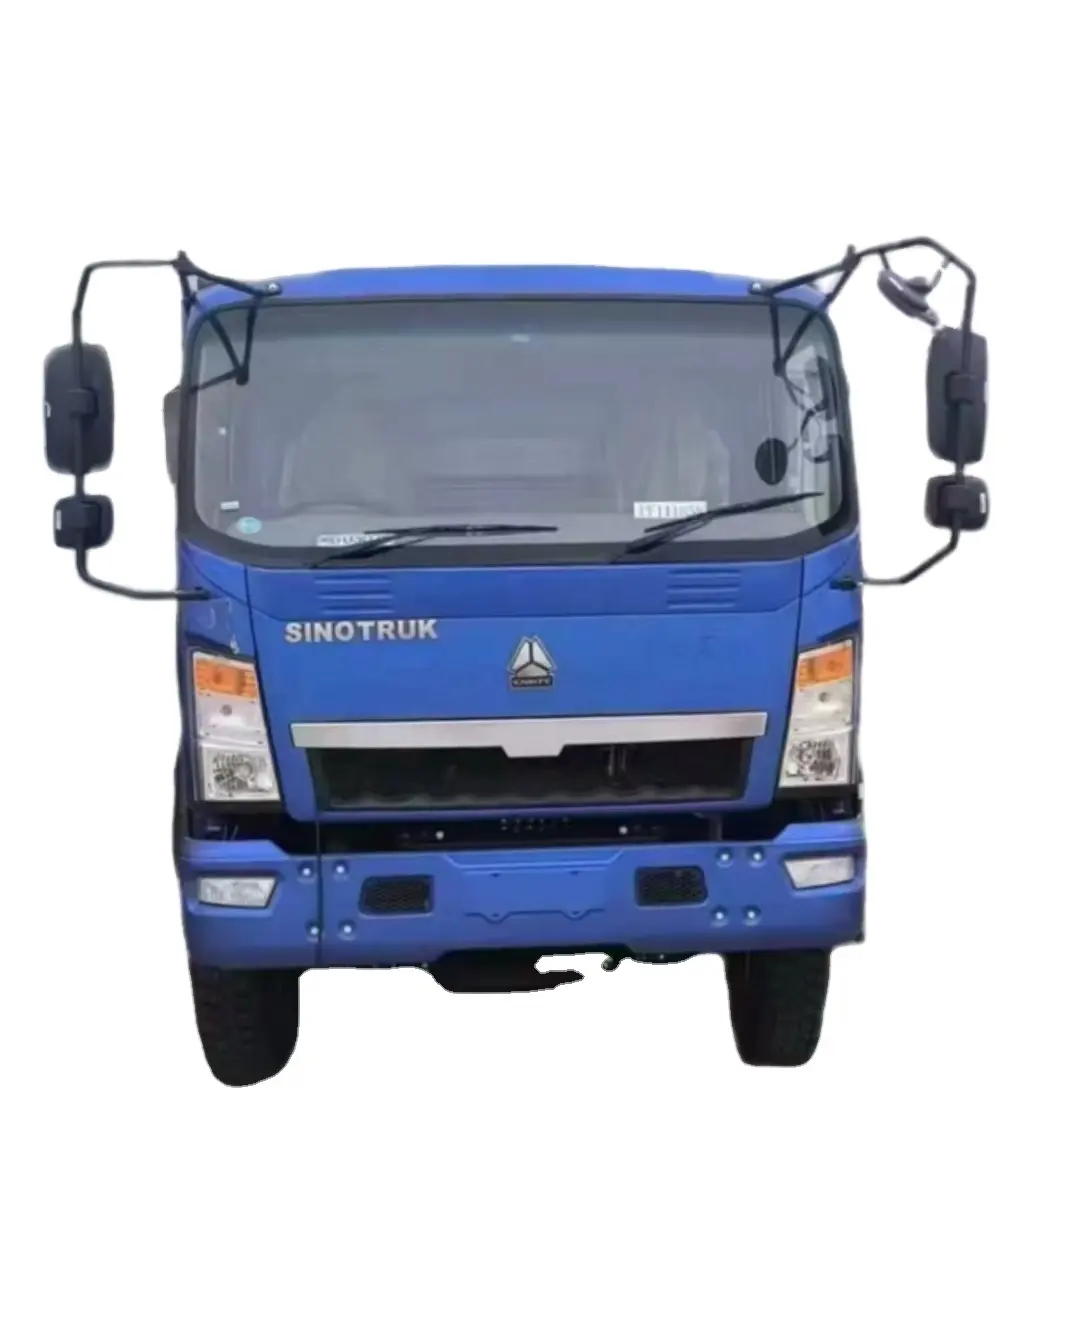 رخيصة سعر المصنع SINOTRUCK Camion 4*2 أفضل جودة 4x2 L3 كابينة ديزل شاحنة صغيرة شاحنة بضائع